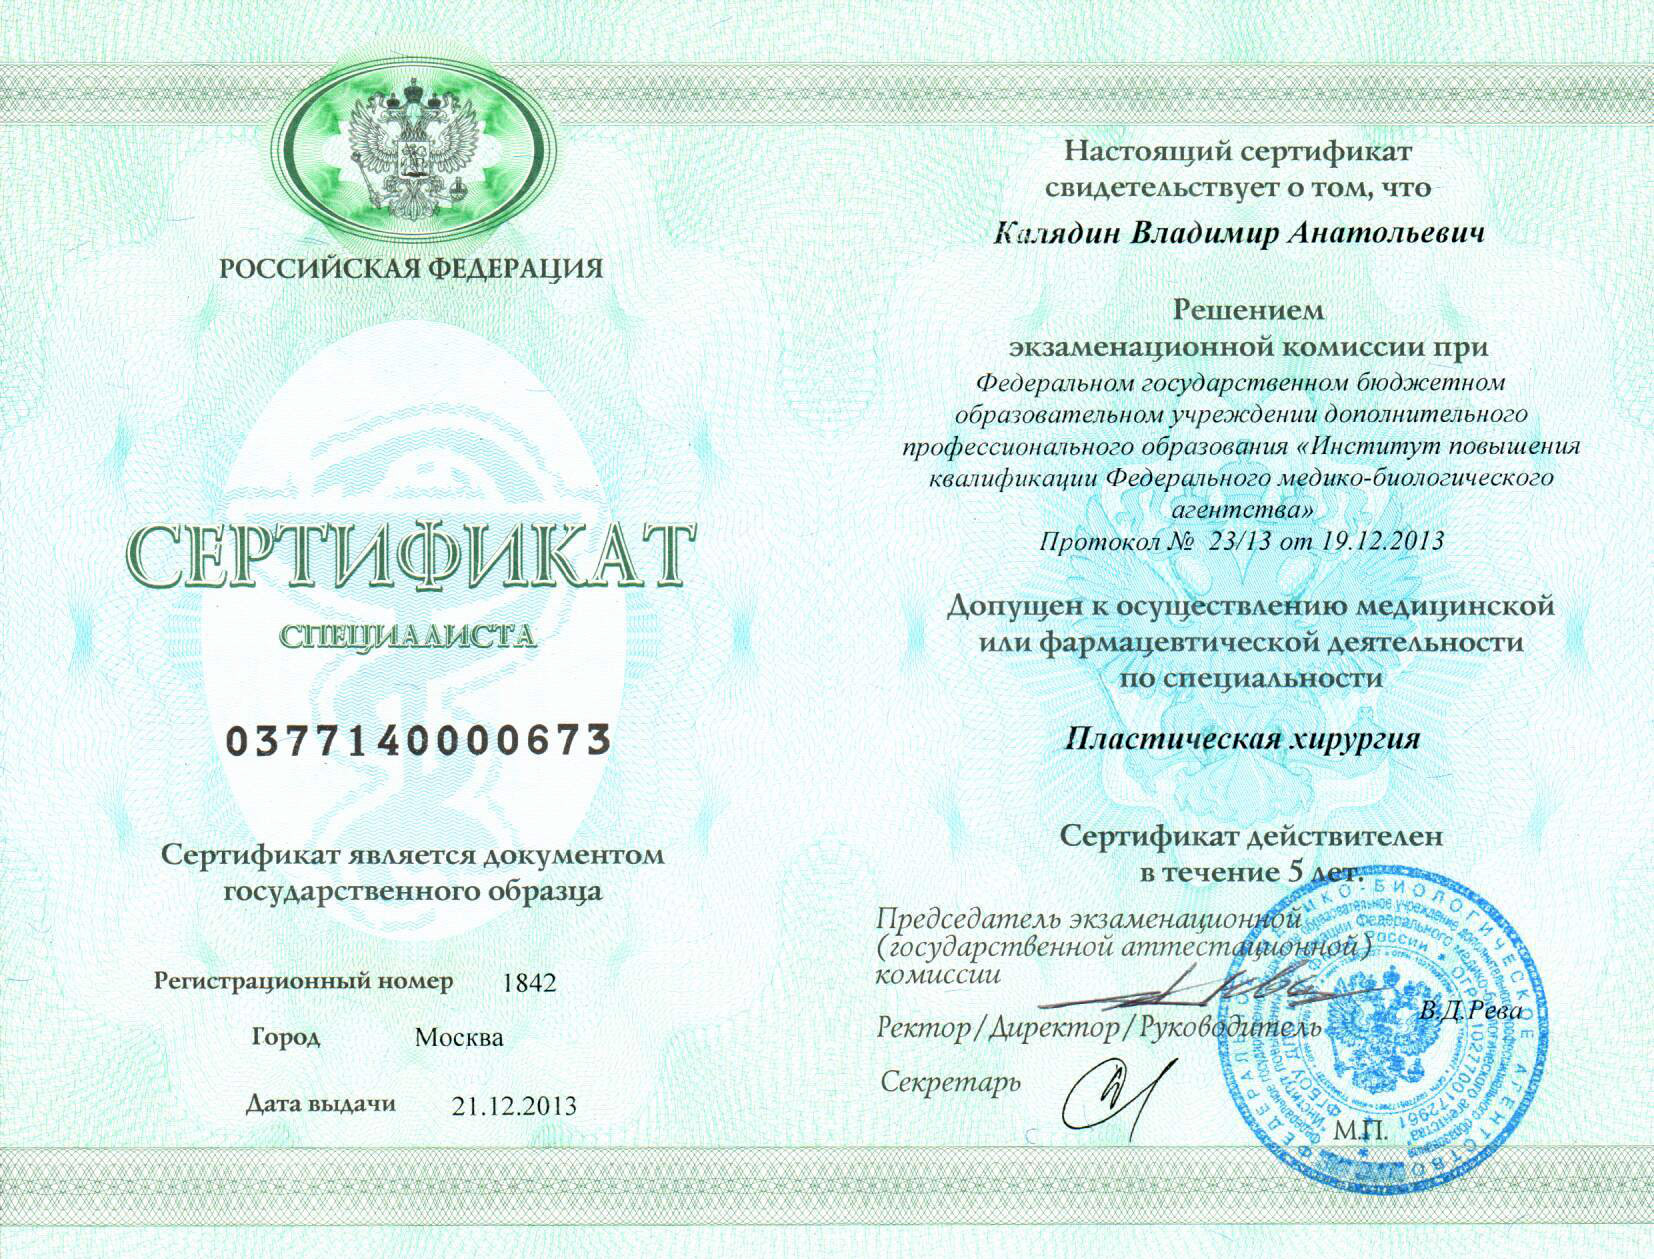 Сертификат специалиста 0377140000673 от 21 декабря 2013 года. Пластическая хирургия.